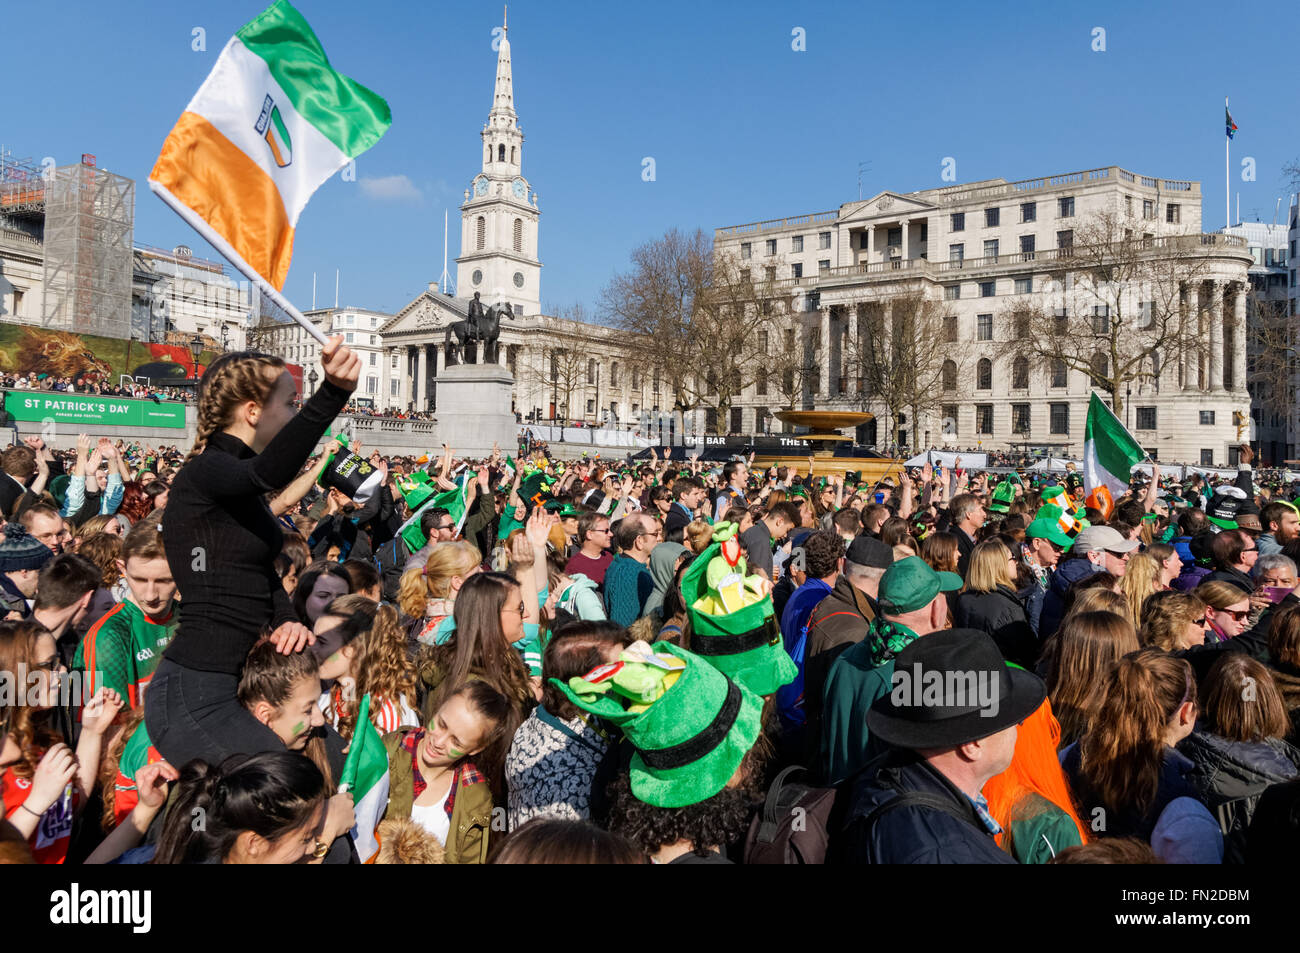 St Patrick's Day celebrations at Trafalgar Square in London